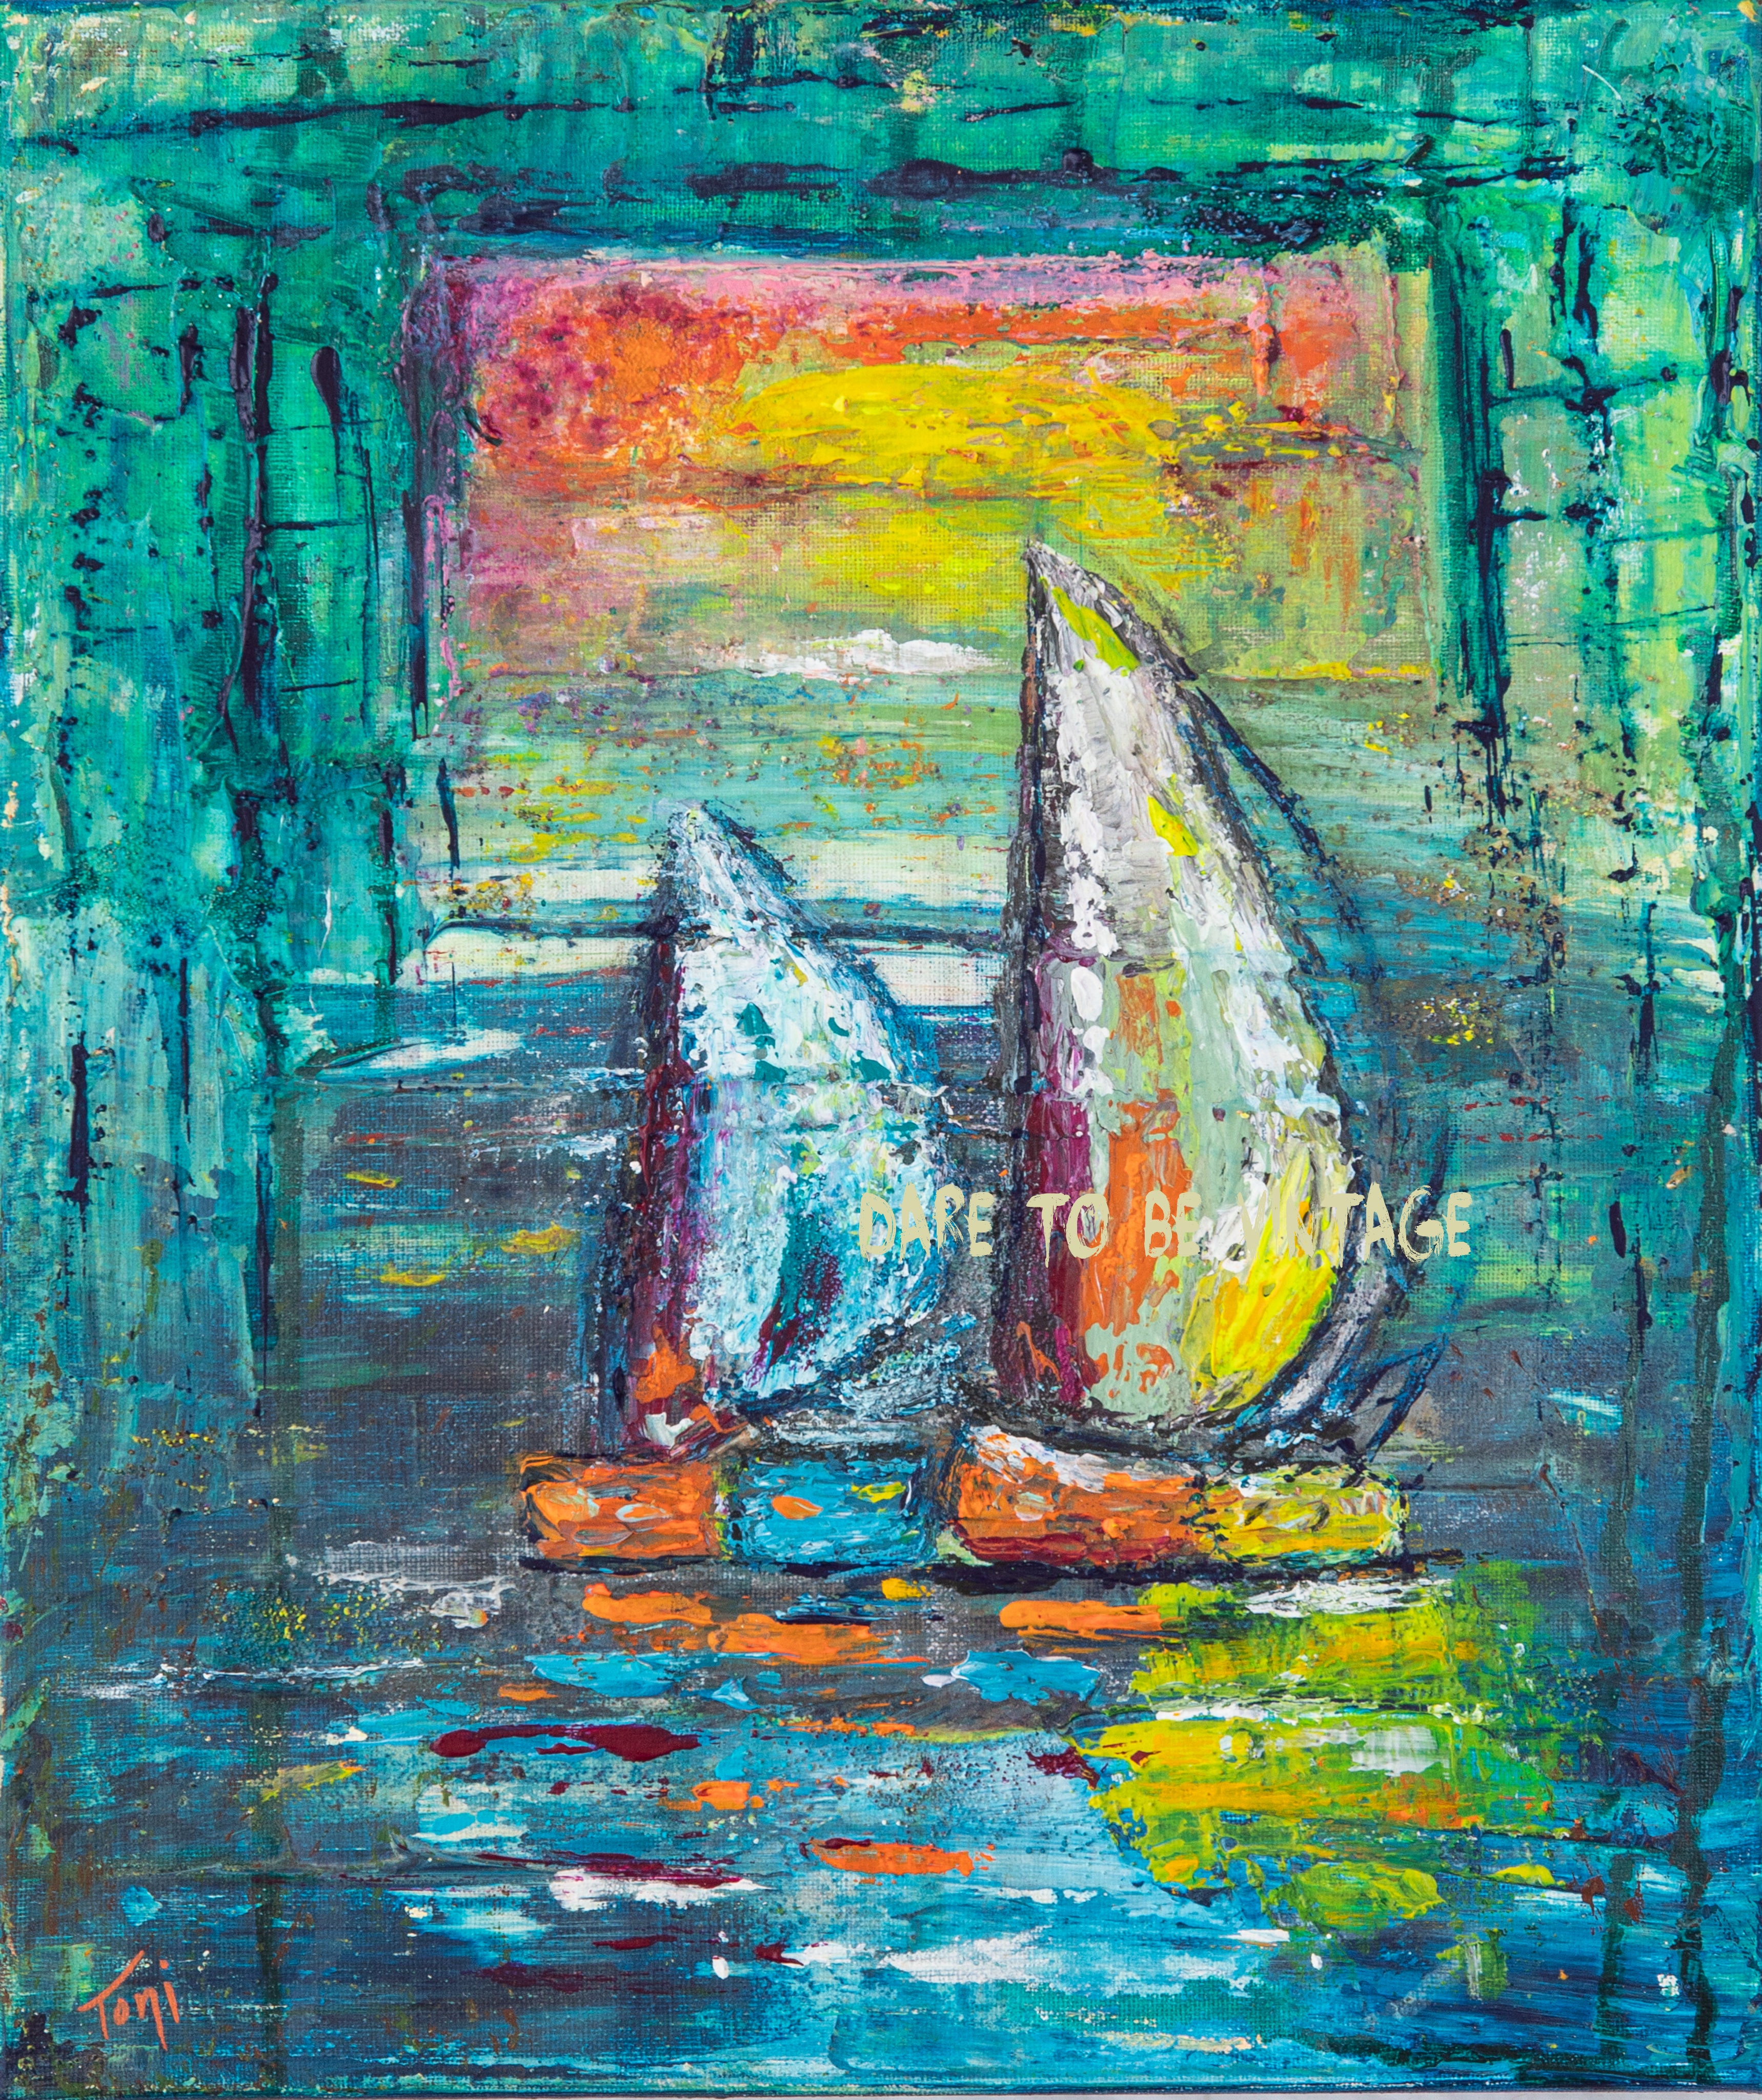 abstract sailboat painting